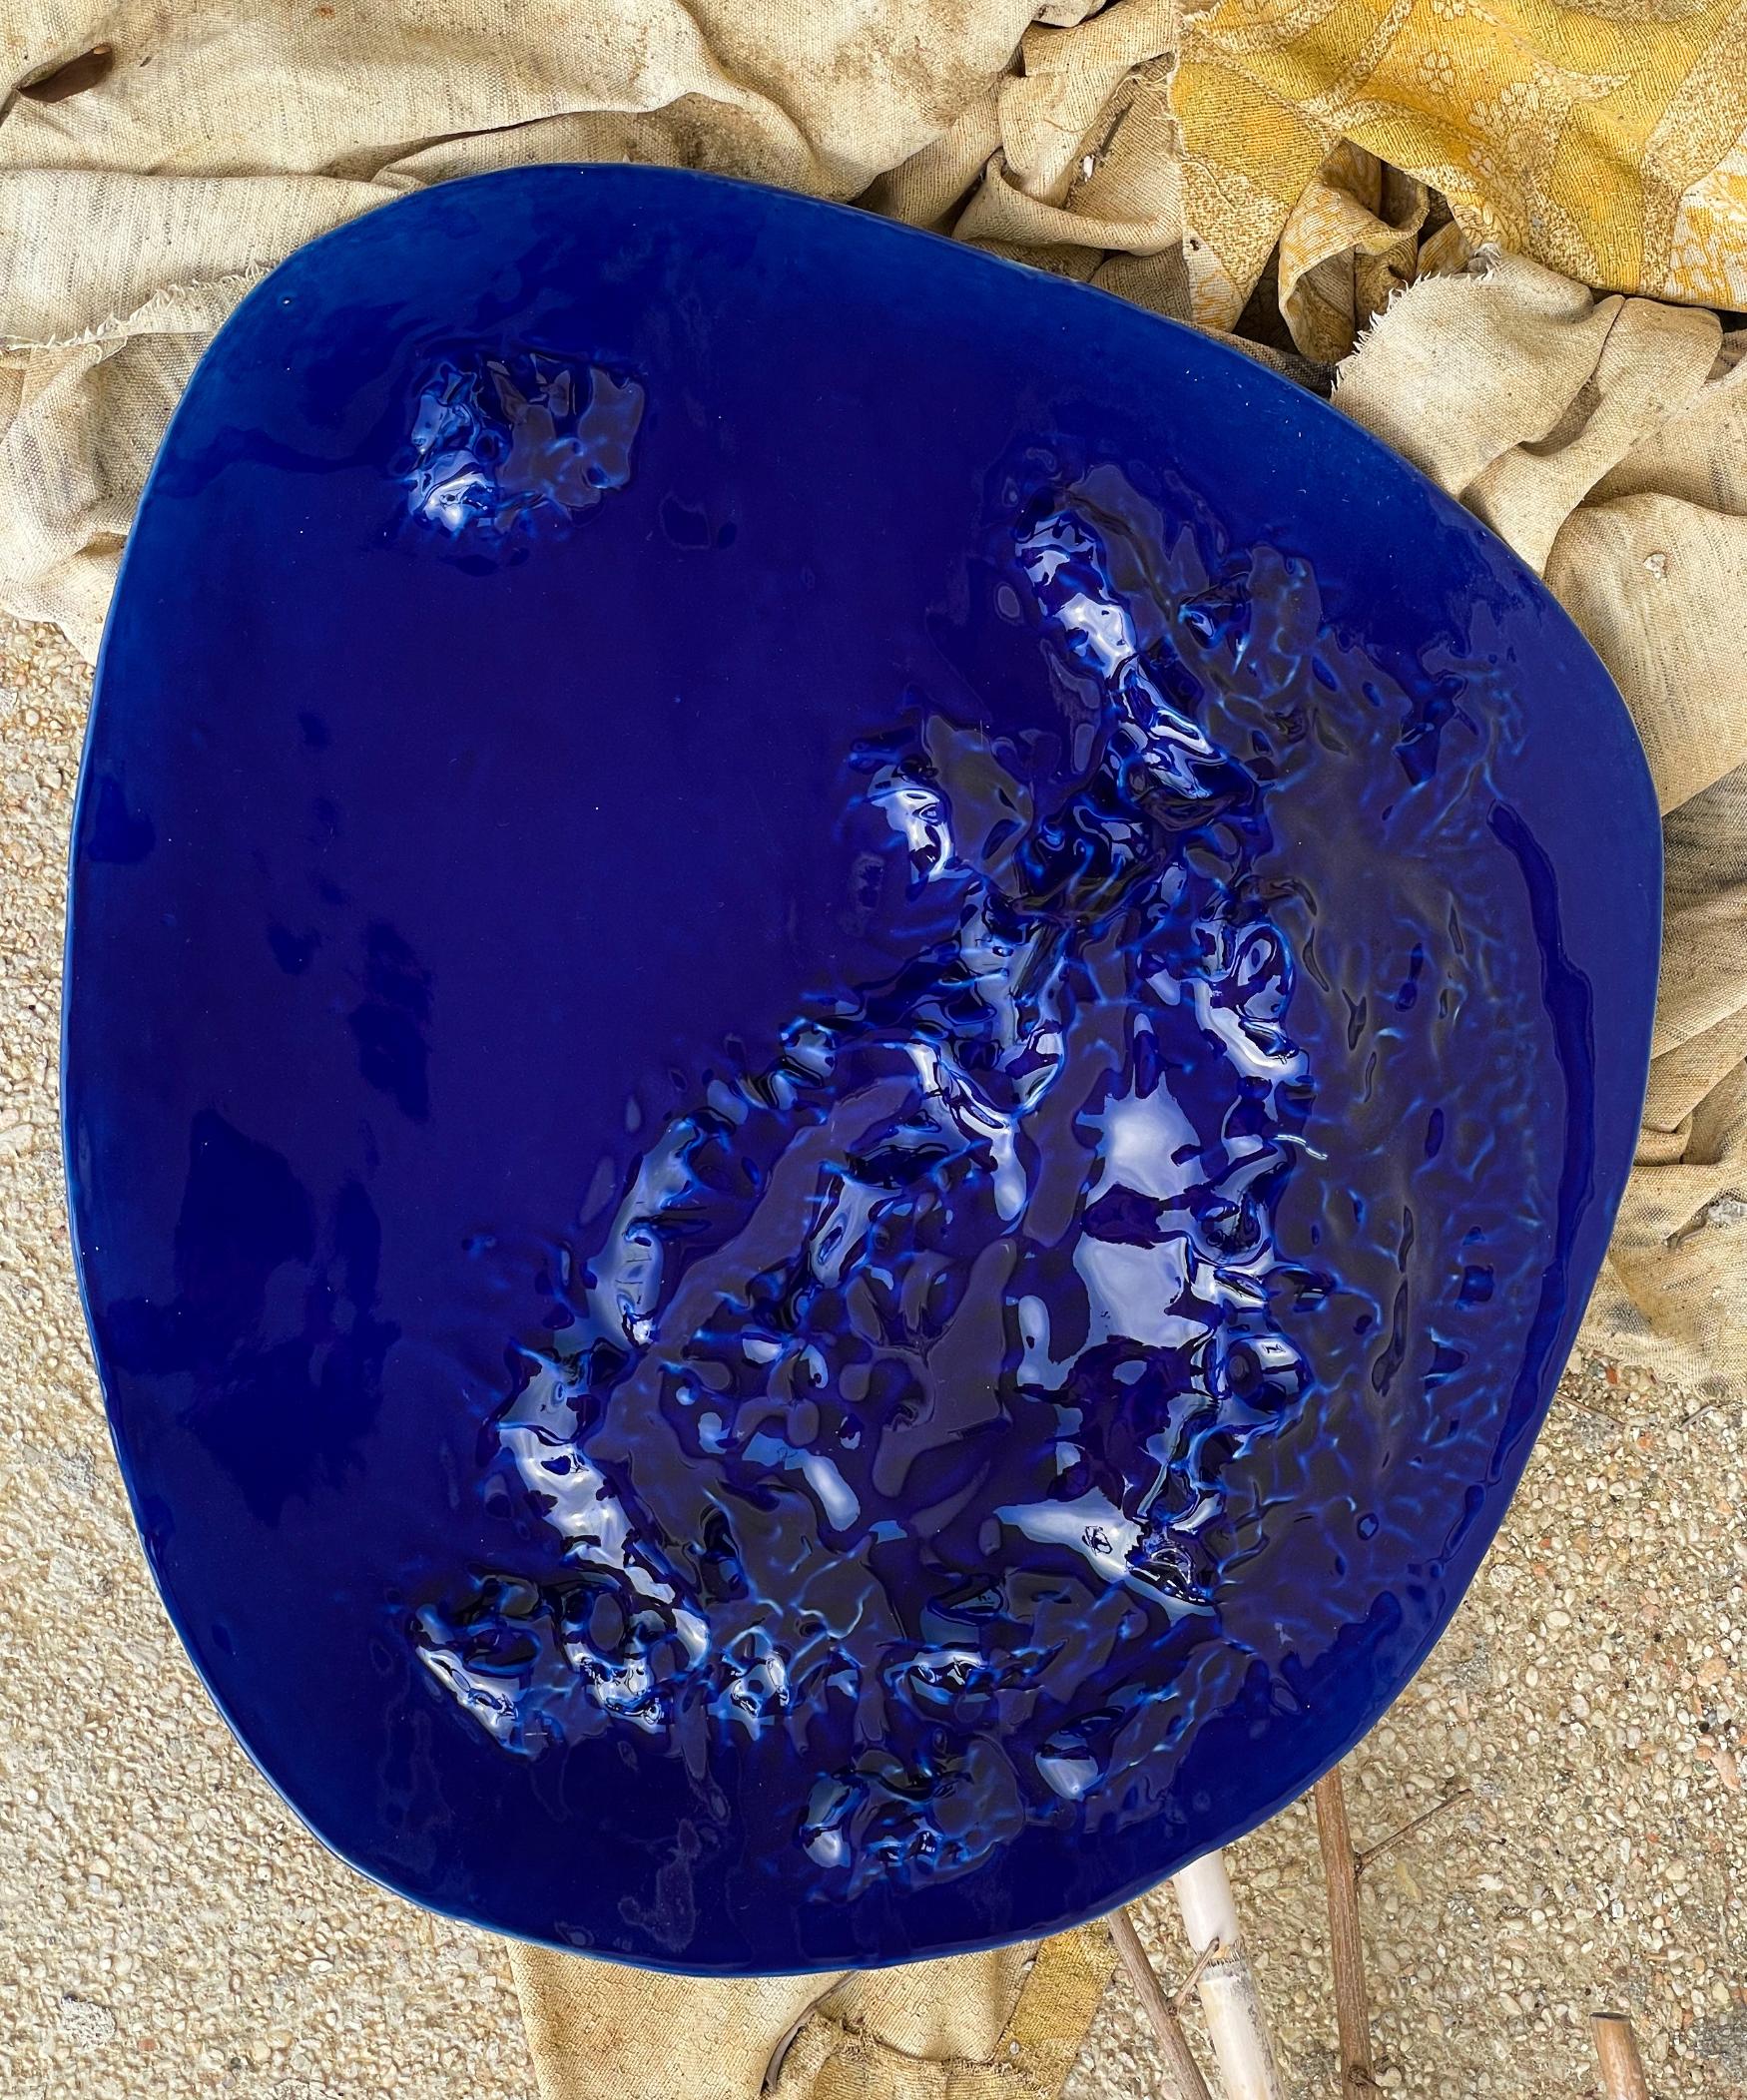 Gongshi-Schilder

Handgefertigte, einzigartige, wellenförmige Teller, Objet d'Art in kobaltblau.

Diese skulpturalen Teller sind von den chinesischen 